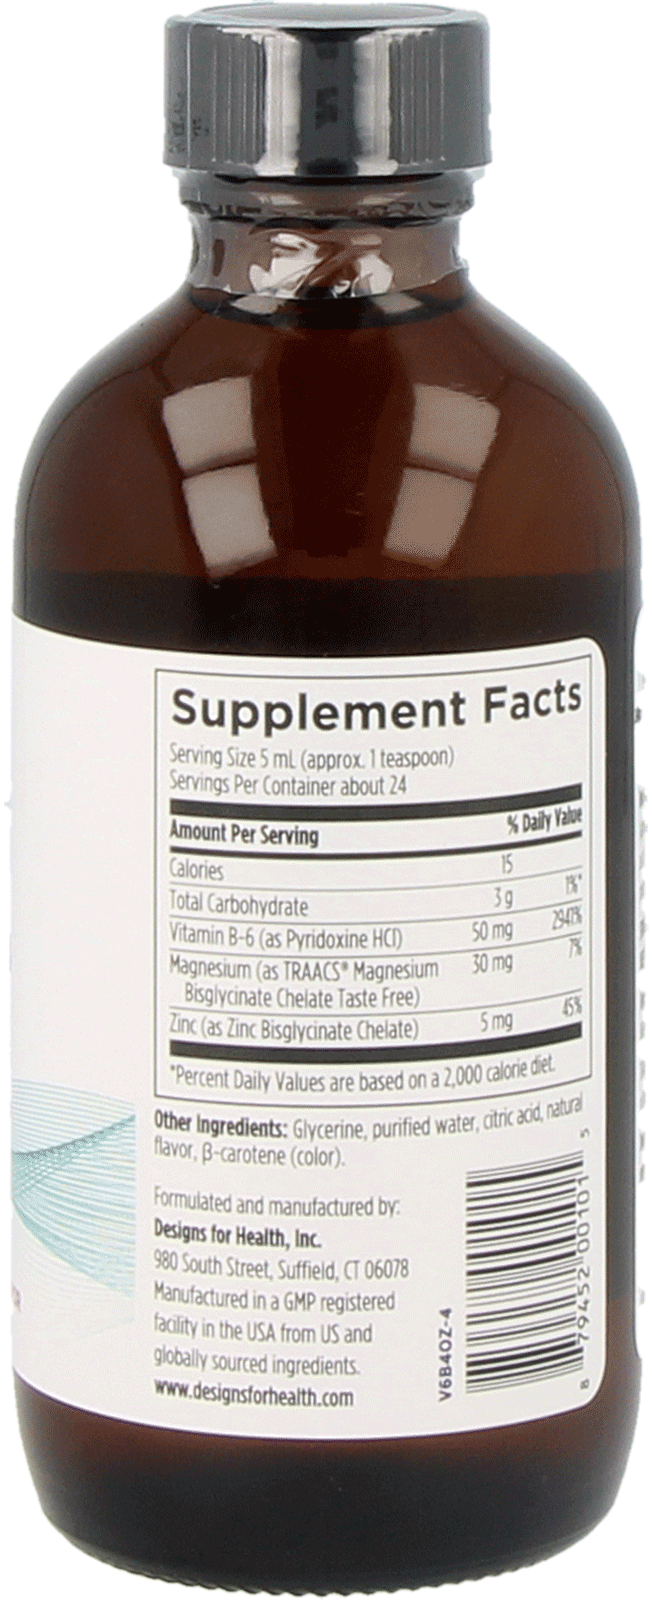 Vitamin B-6 Liquid